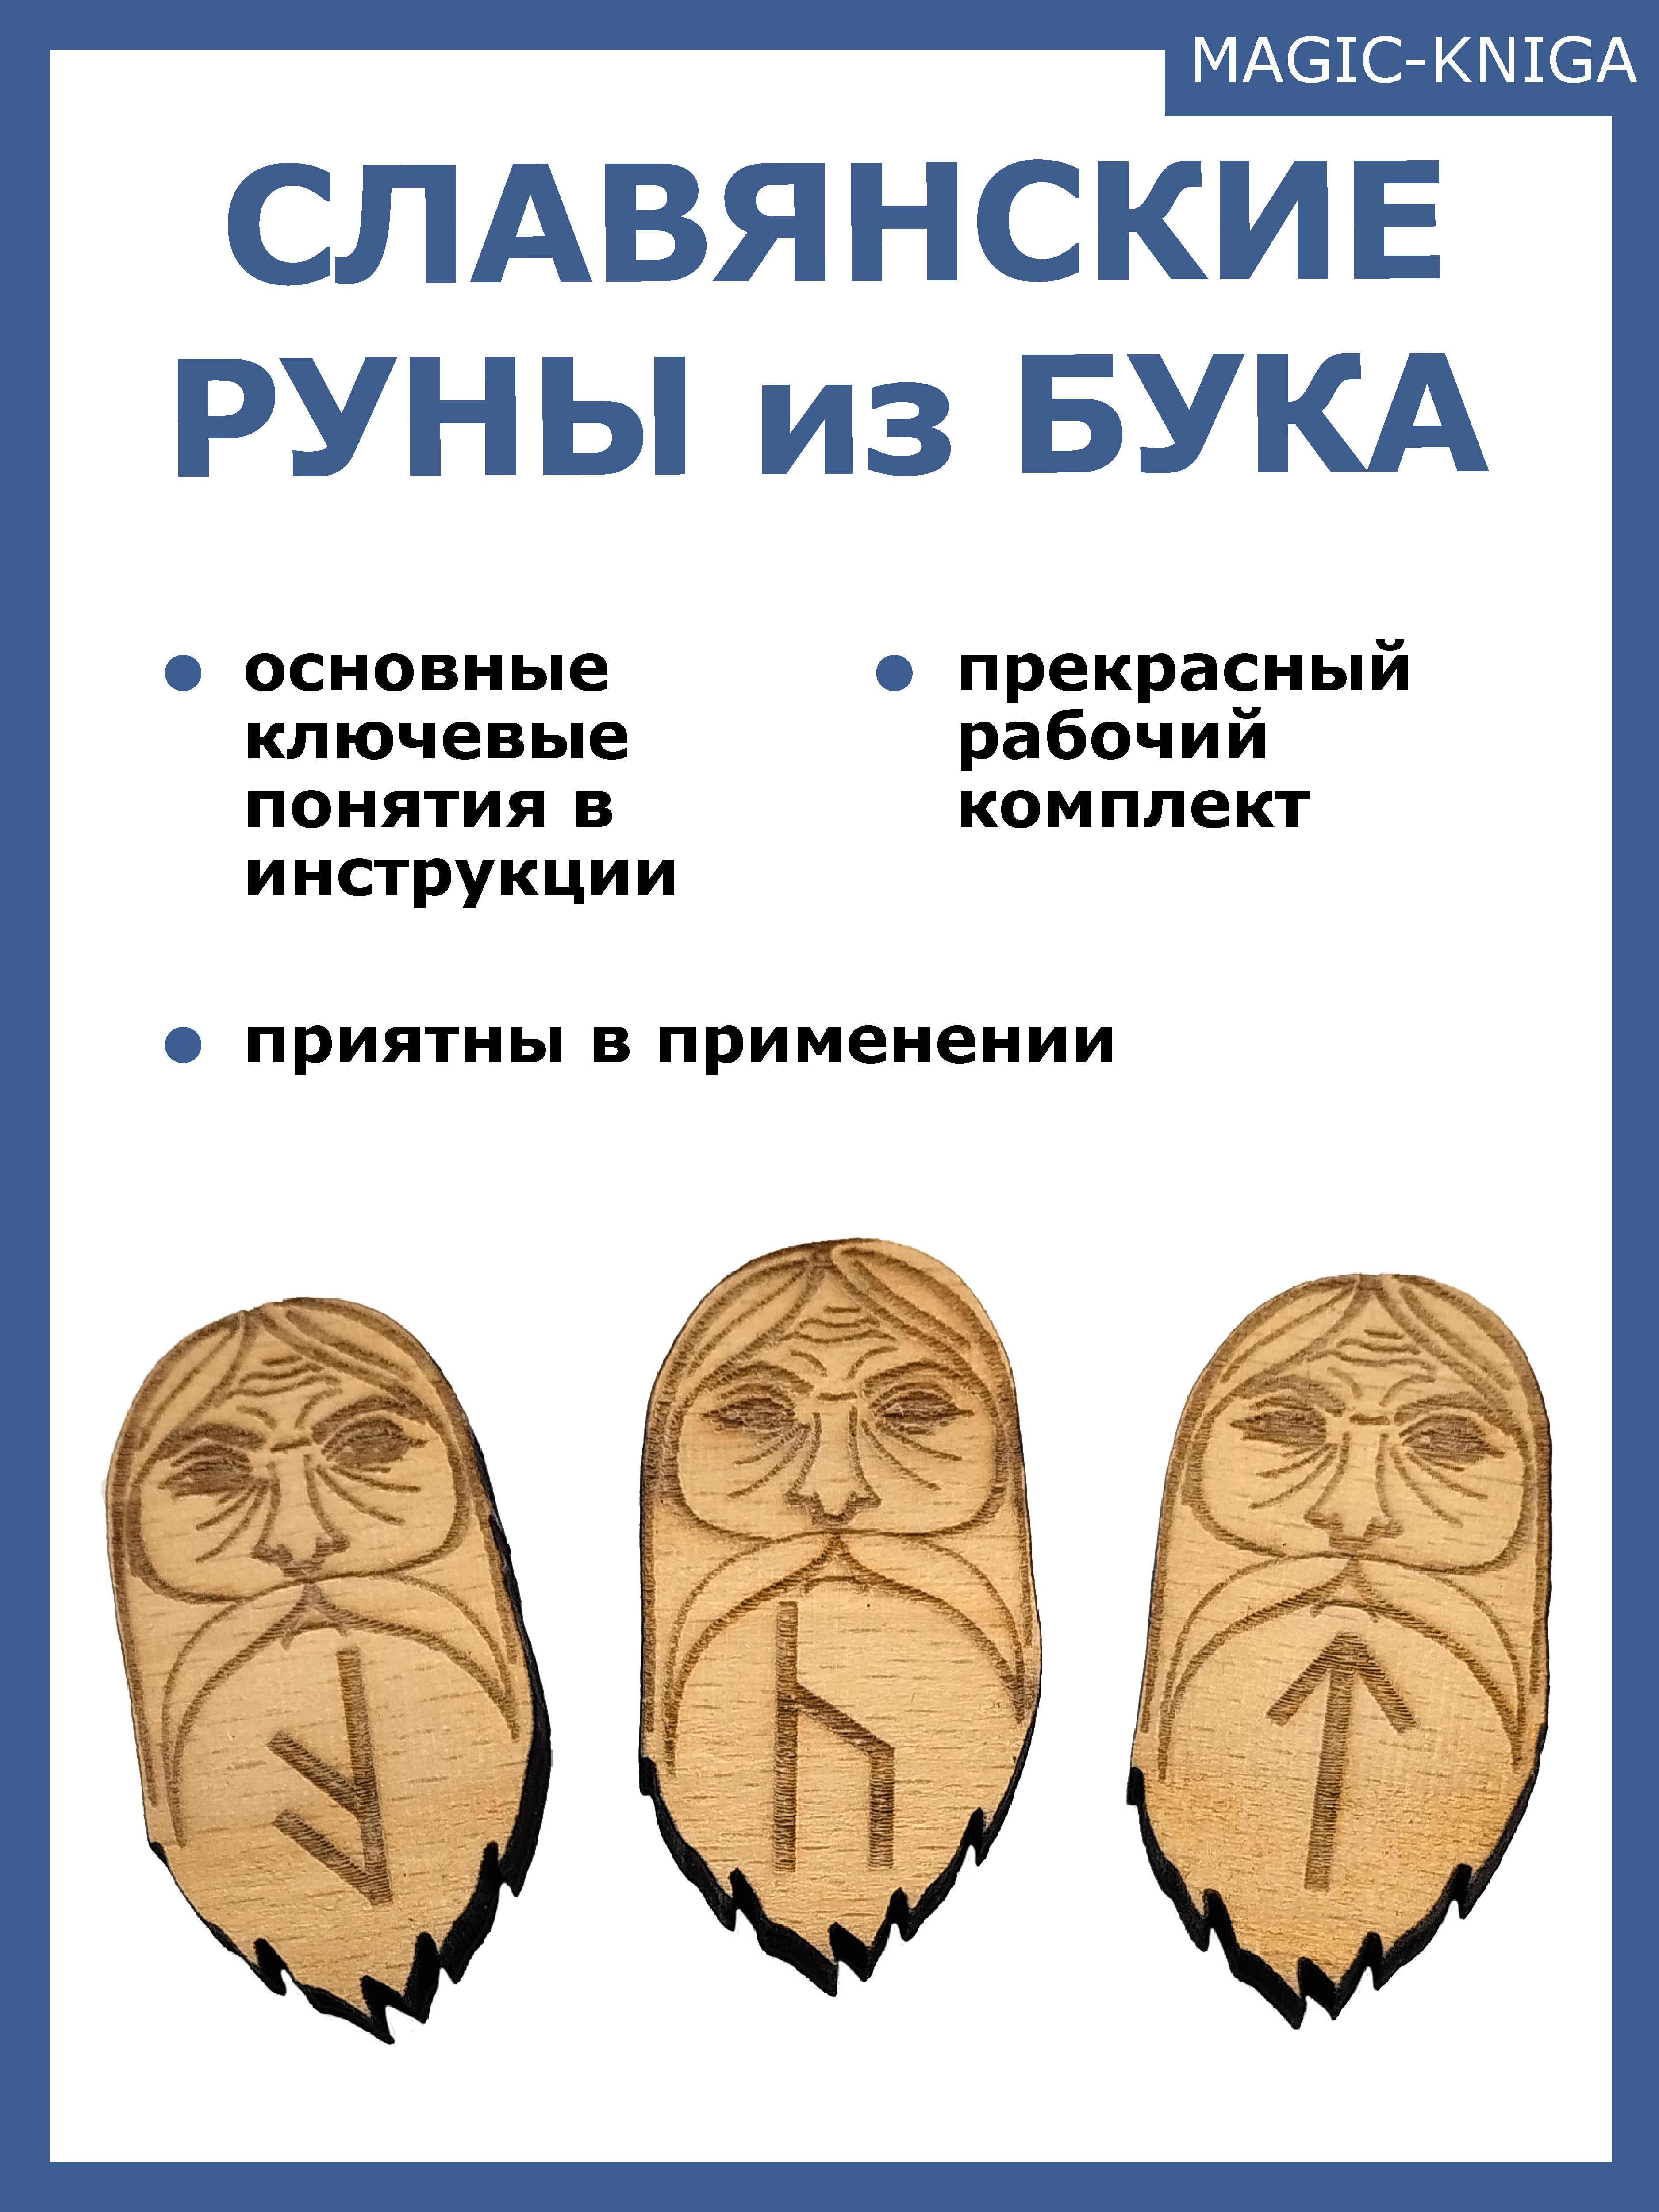 Доступное руководство для гадания на славянских рунах